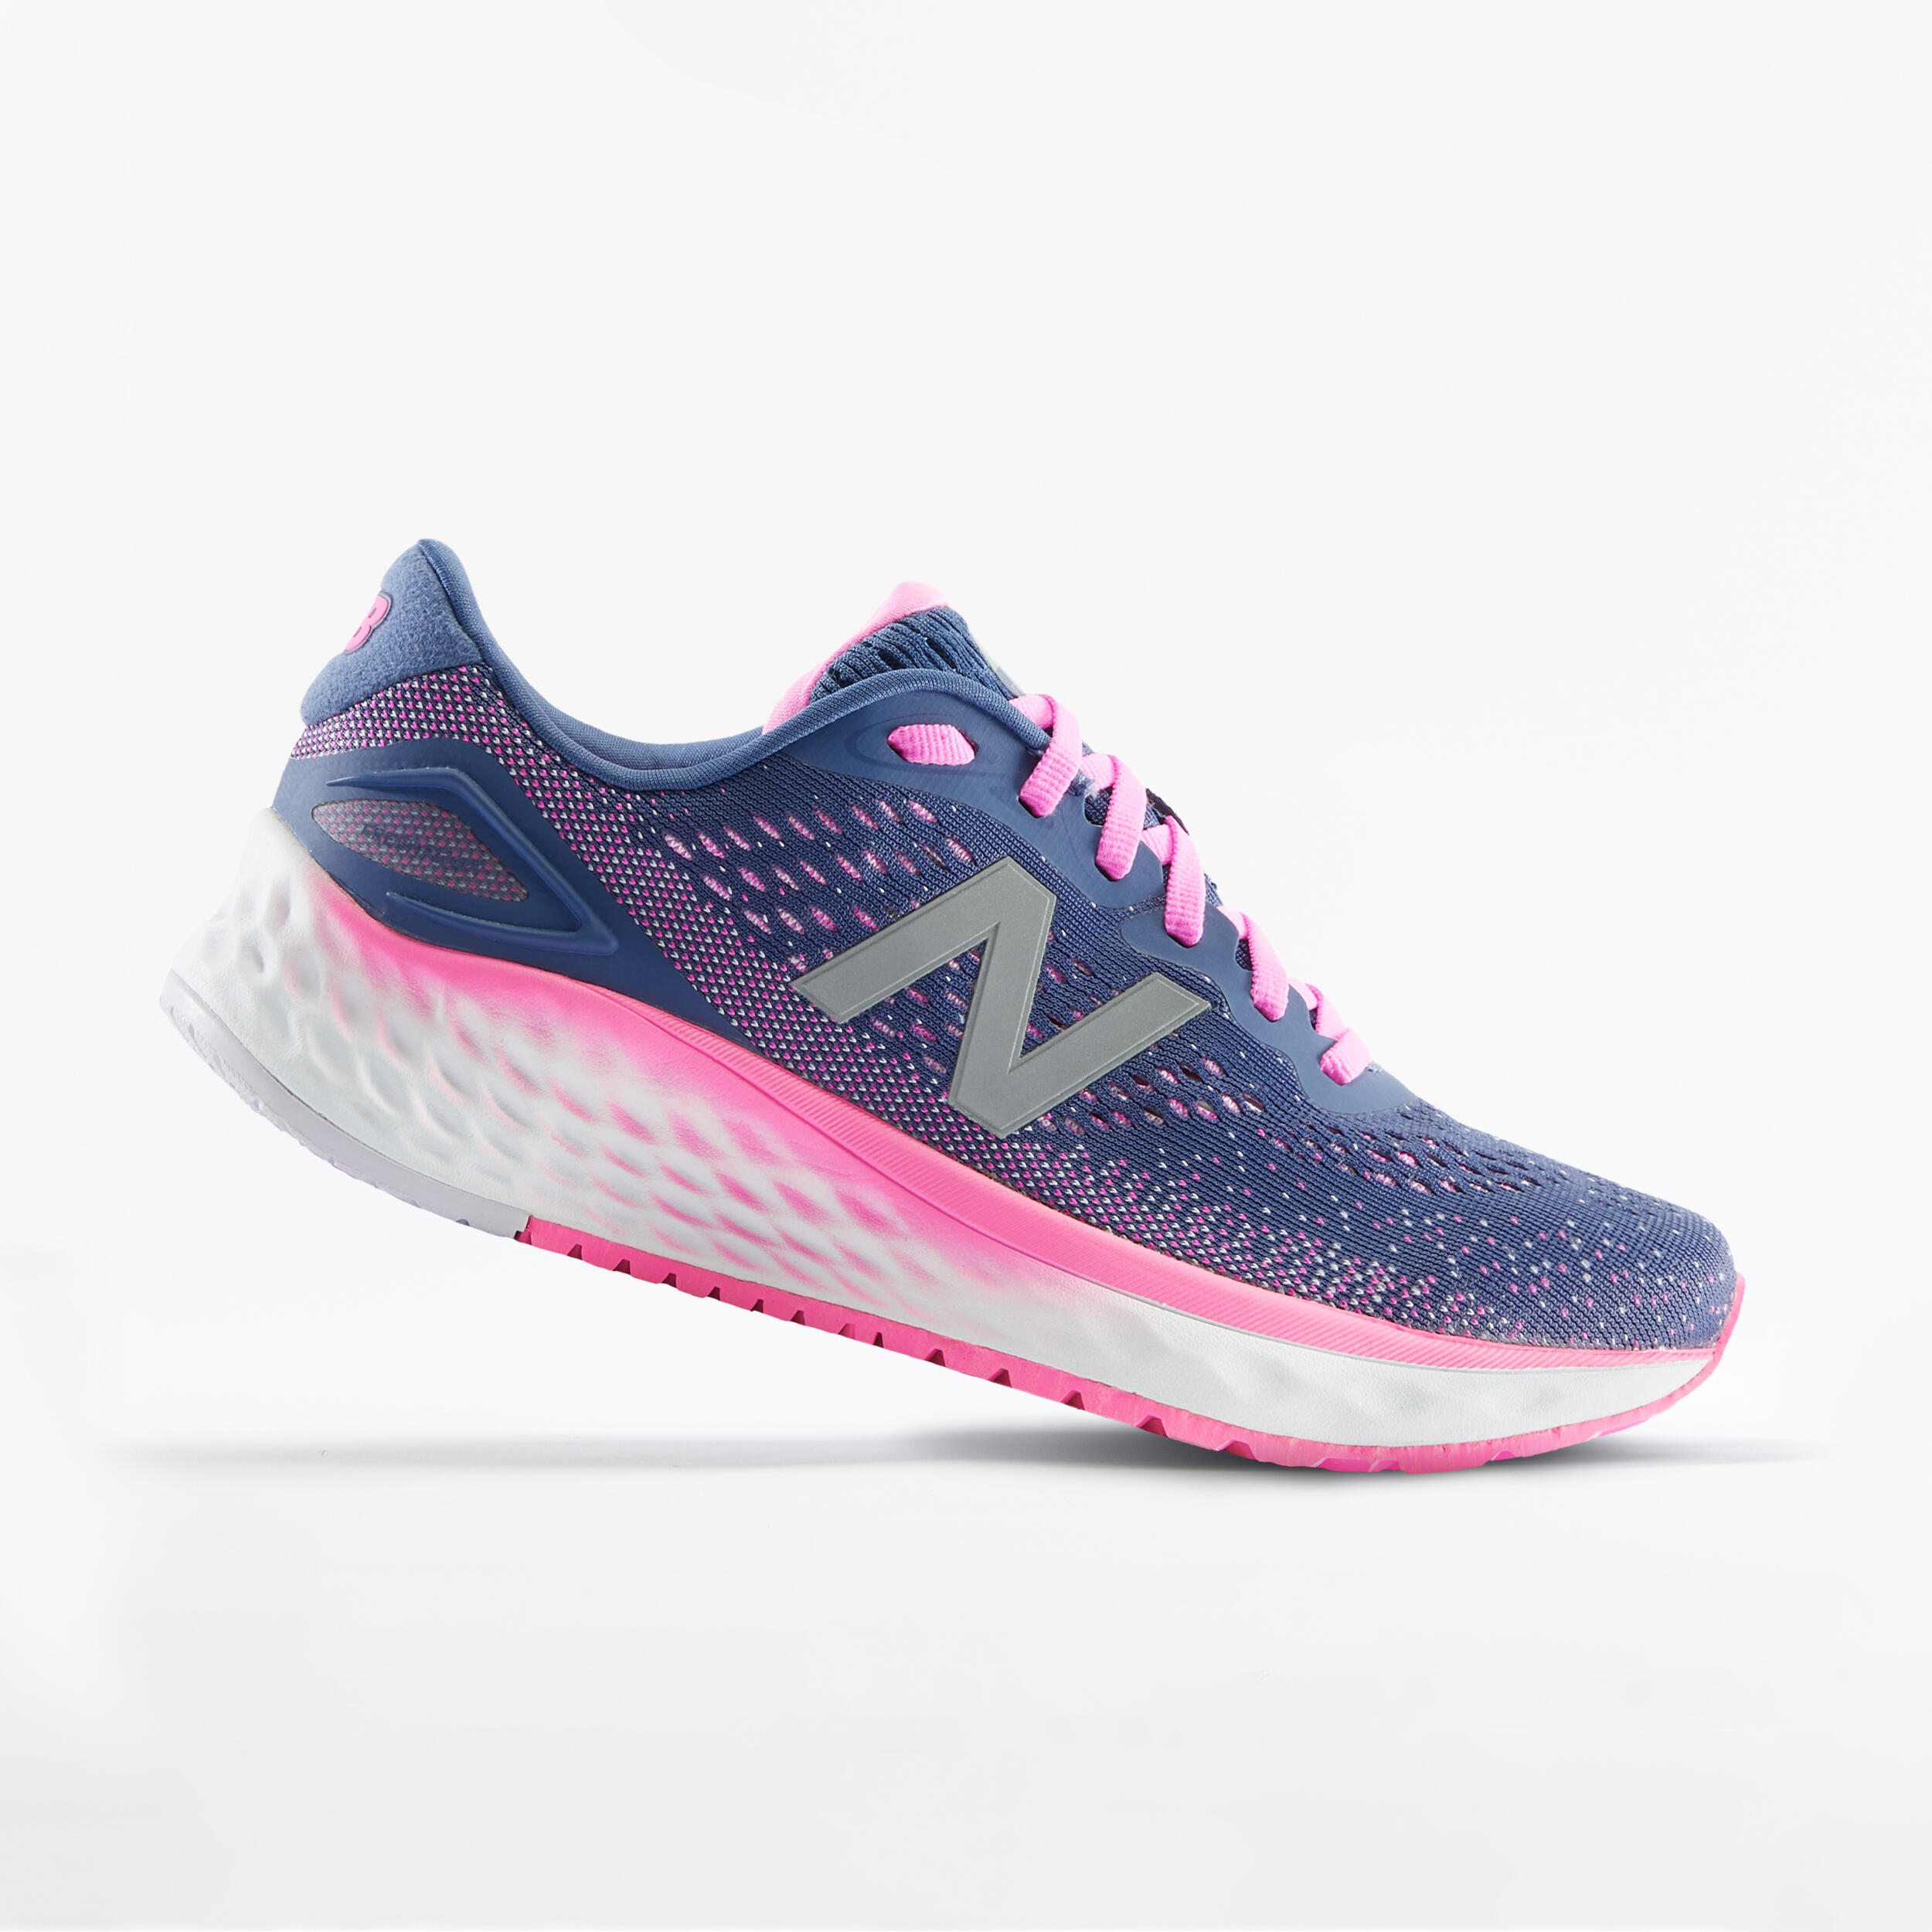 Calzado deportivo y de running para mujer - New Balance